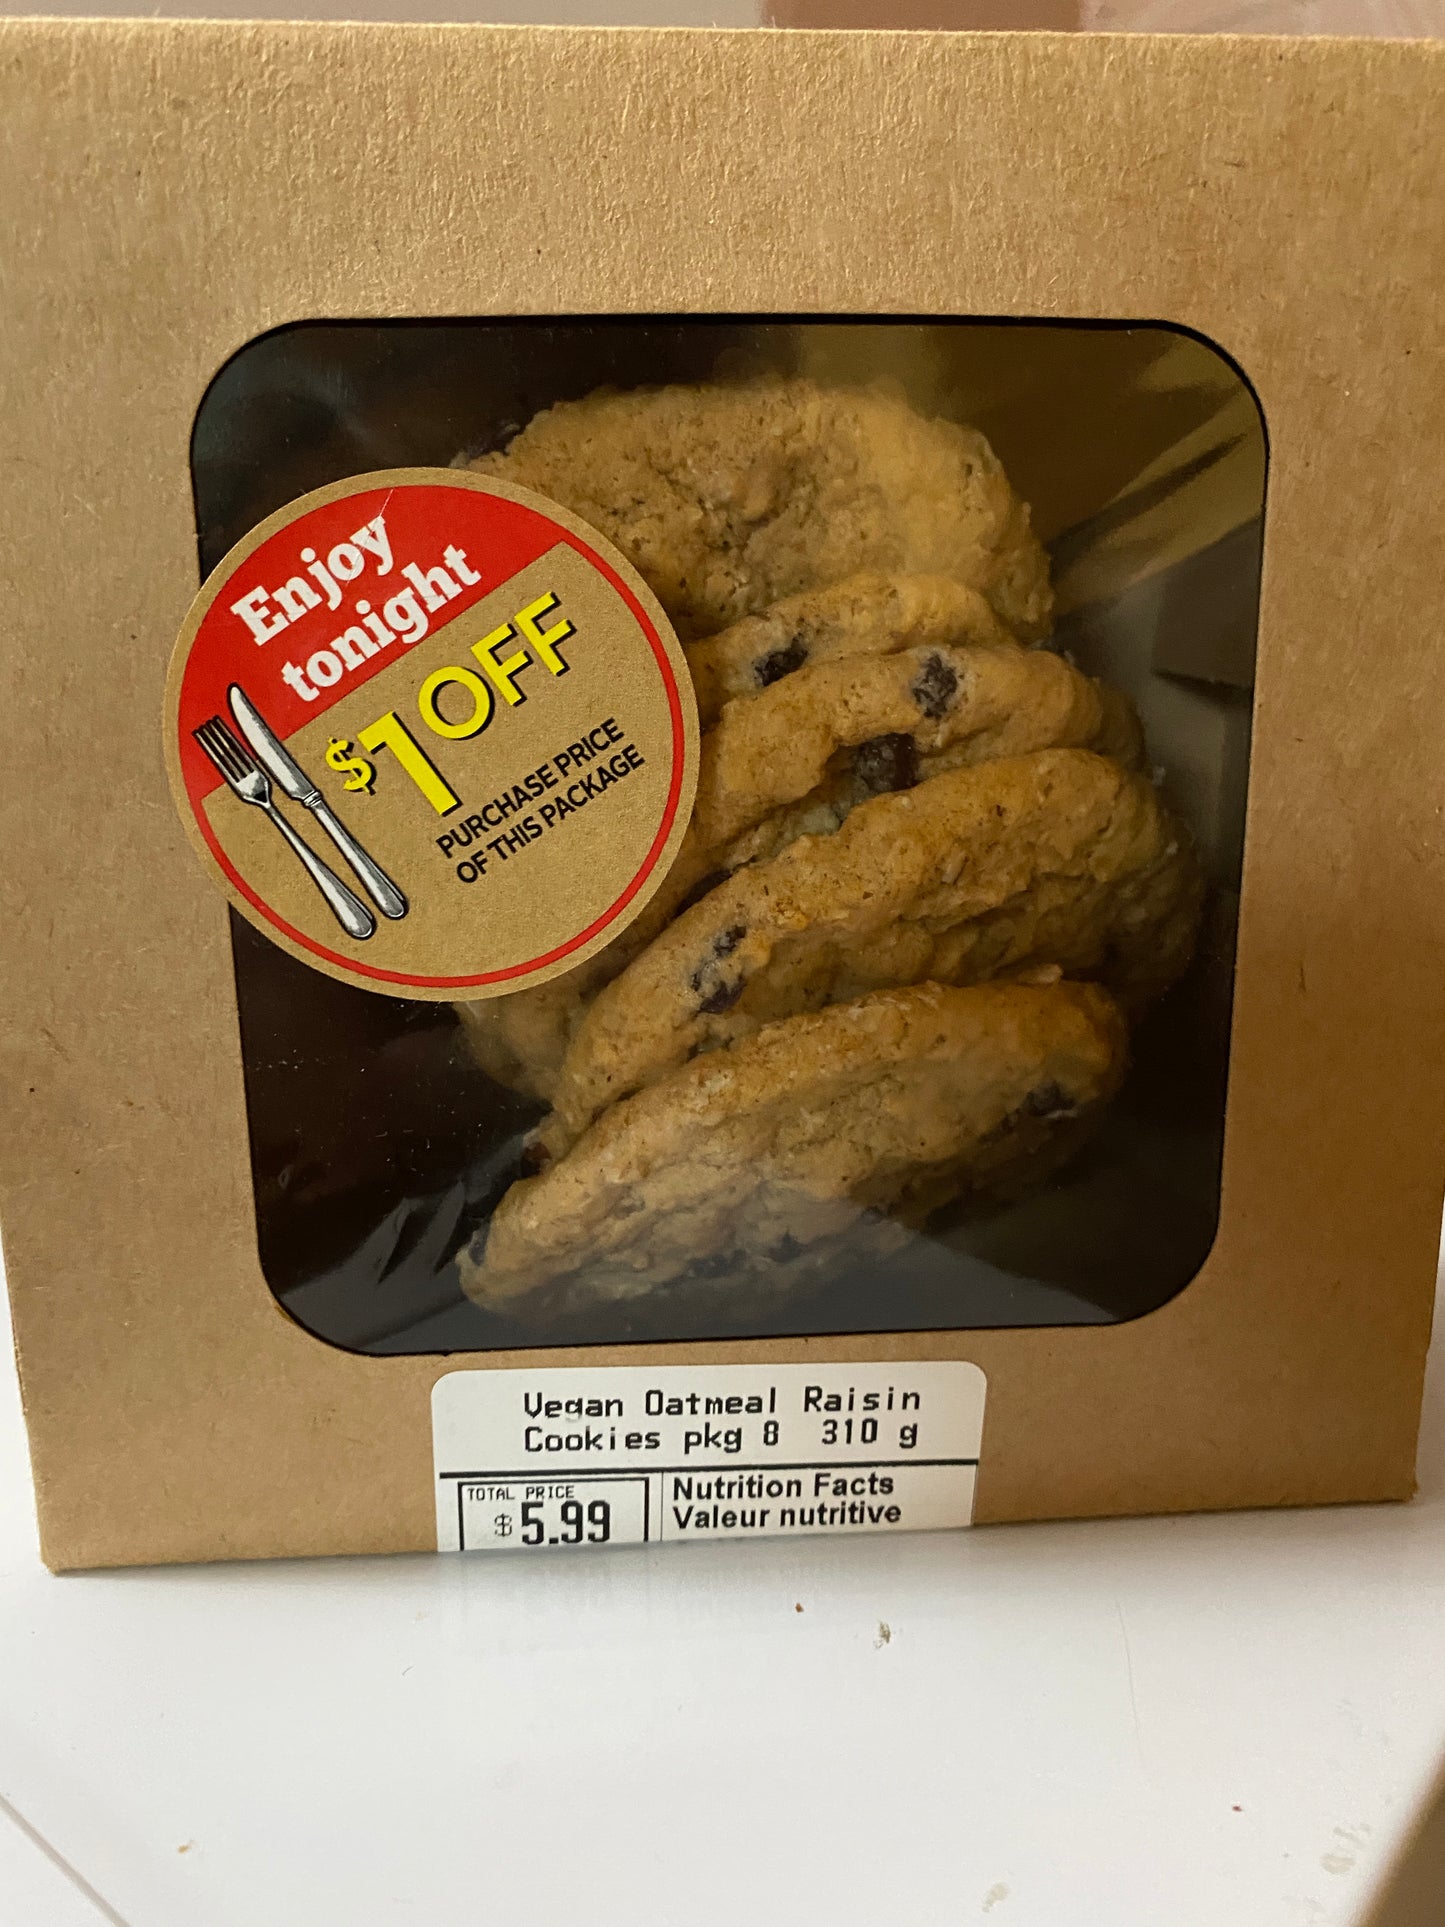 Cookies (Sobeys)